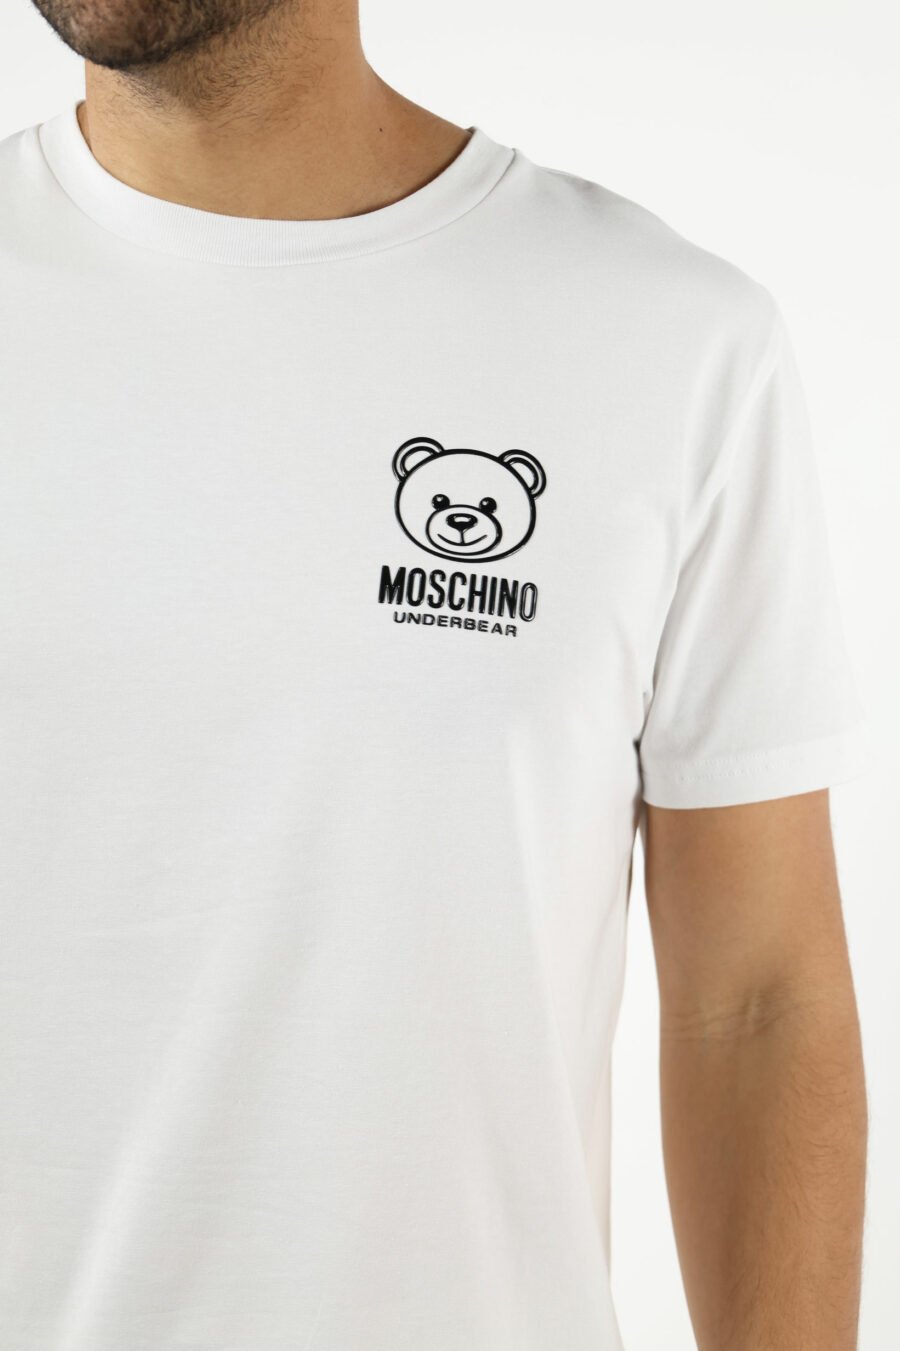 T-shirt blanc avec mini-logo ours "underbear" en caoutchouc noir - 111031